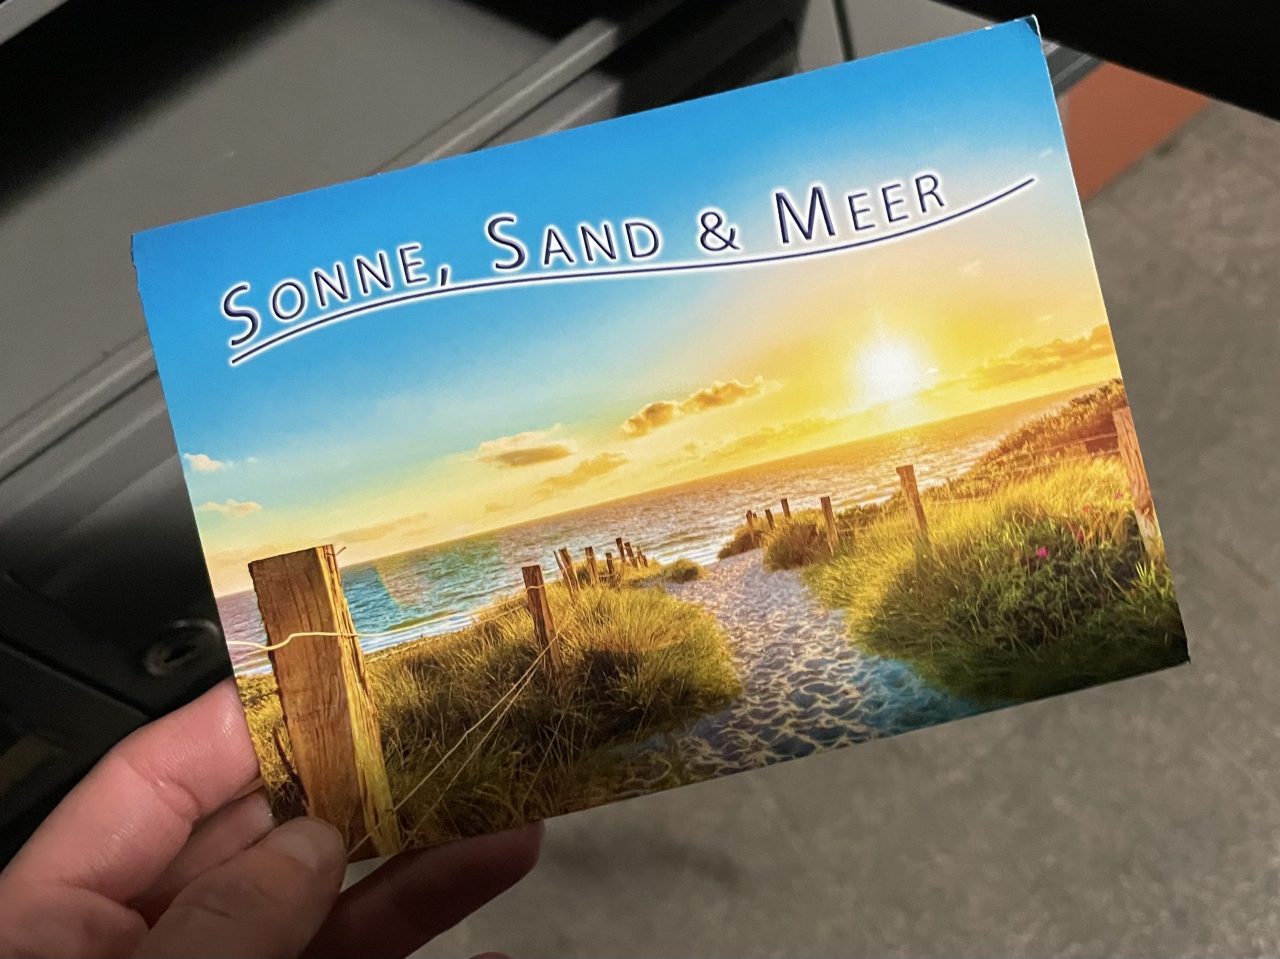 Postkarte mit Seemotiv vor einem Briefkasten gehalten